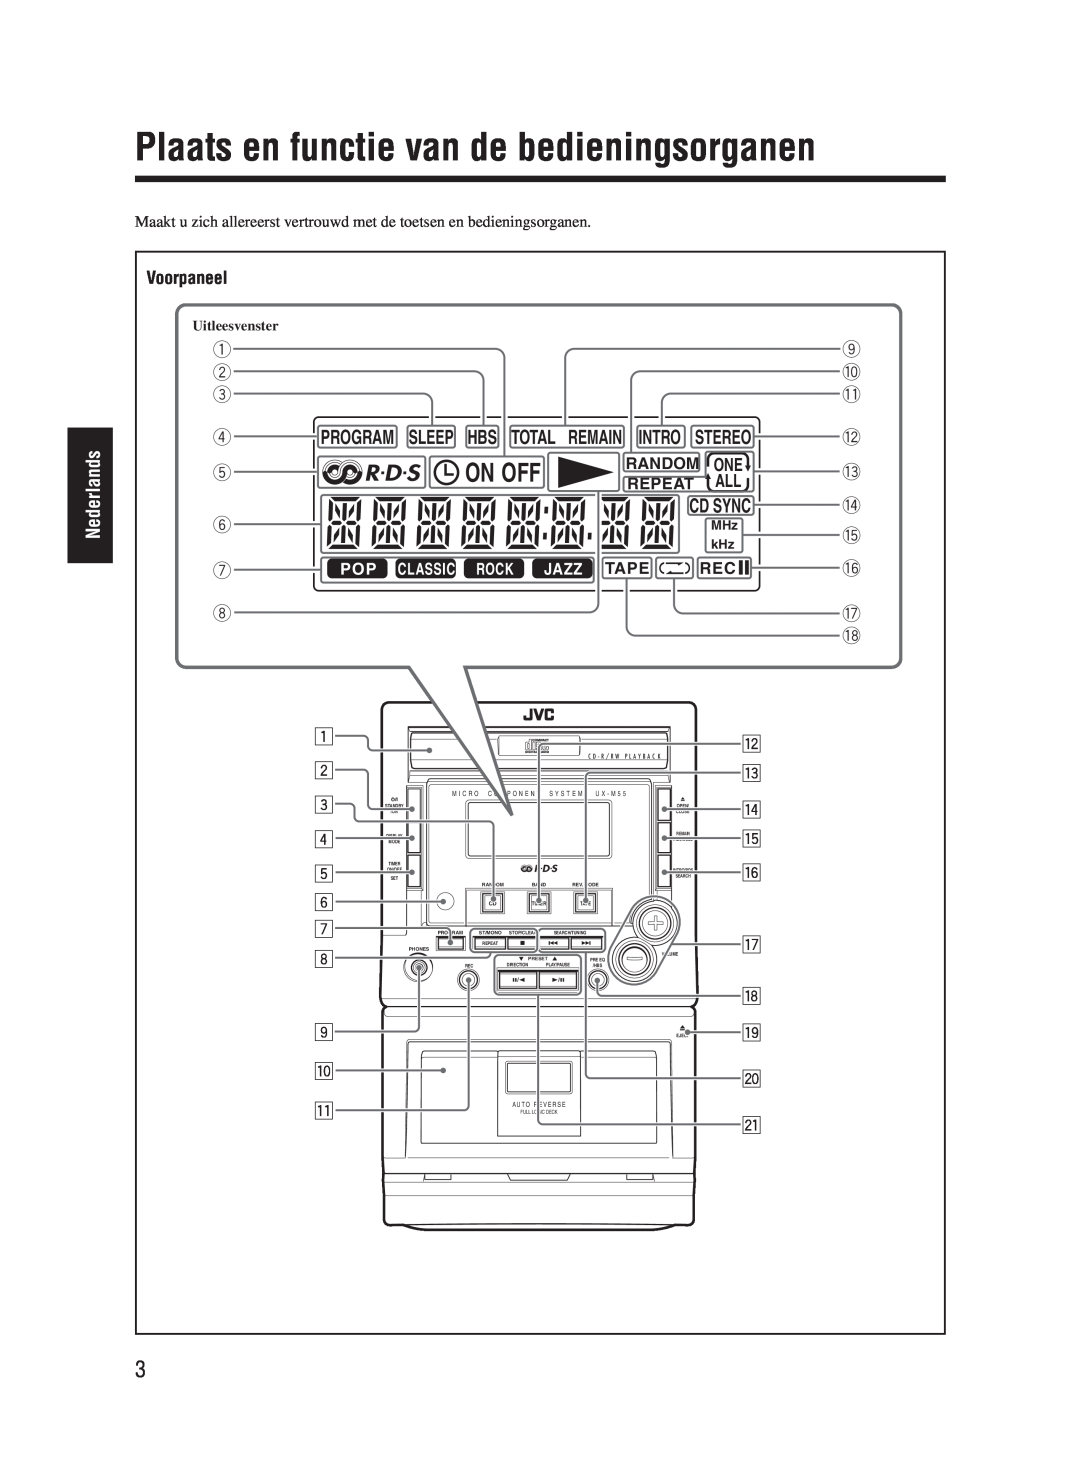 JVC UX-M55 manual Plaats en functie van de bedieningsorganen, On Off, Nederlands, Voorpaneel 